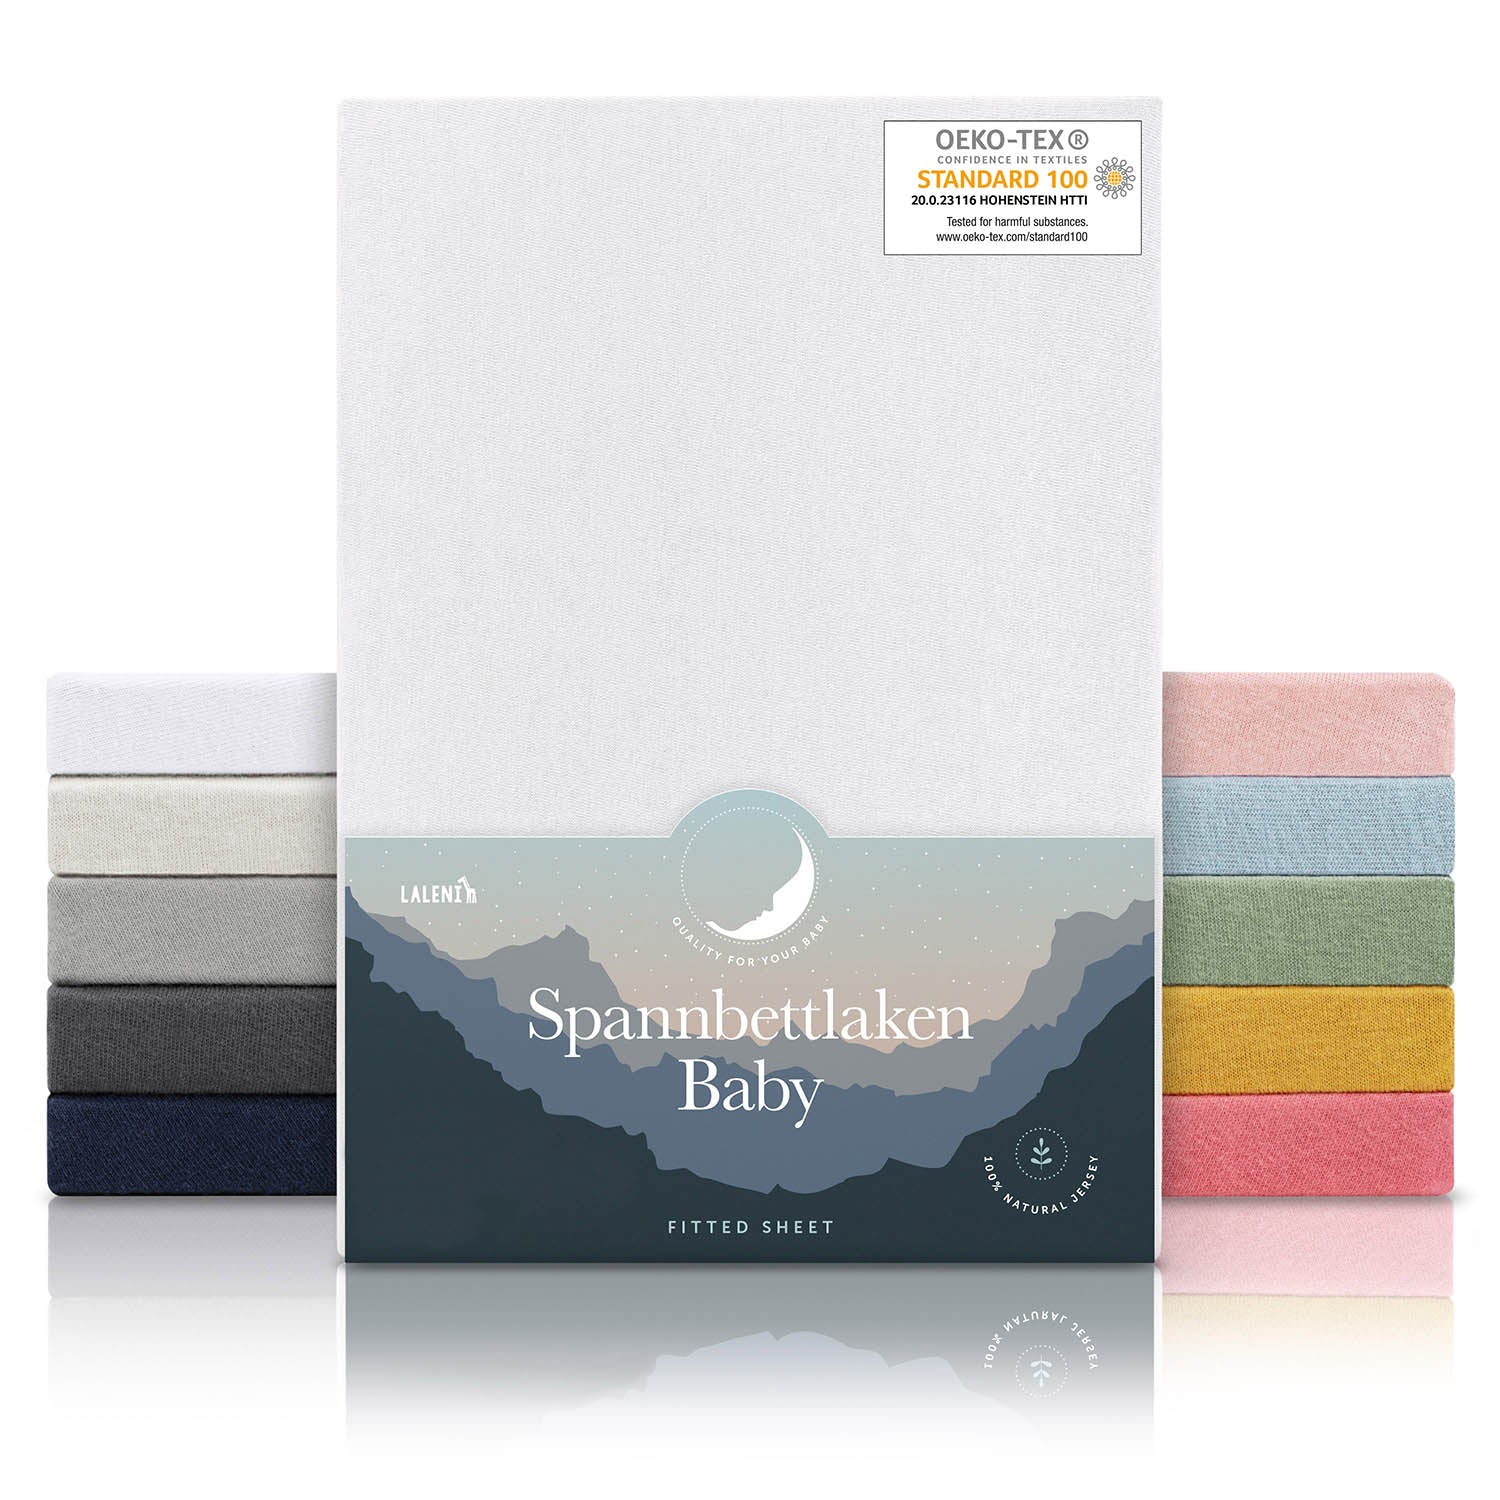 Verpackung von weißen Spannbettlaken für Babys mit Öko-Tex Standard 100 Siegel präsentiert neben einem Stapel Laken in verschiedenen Farben.